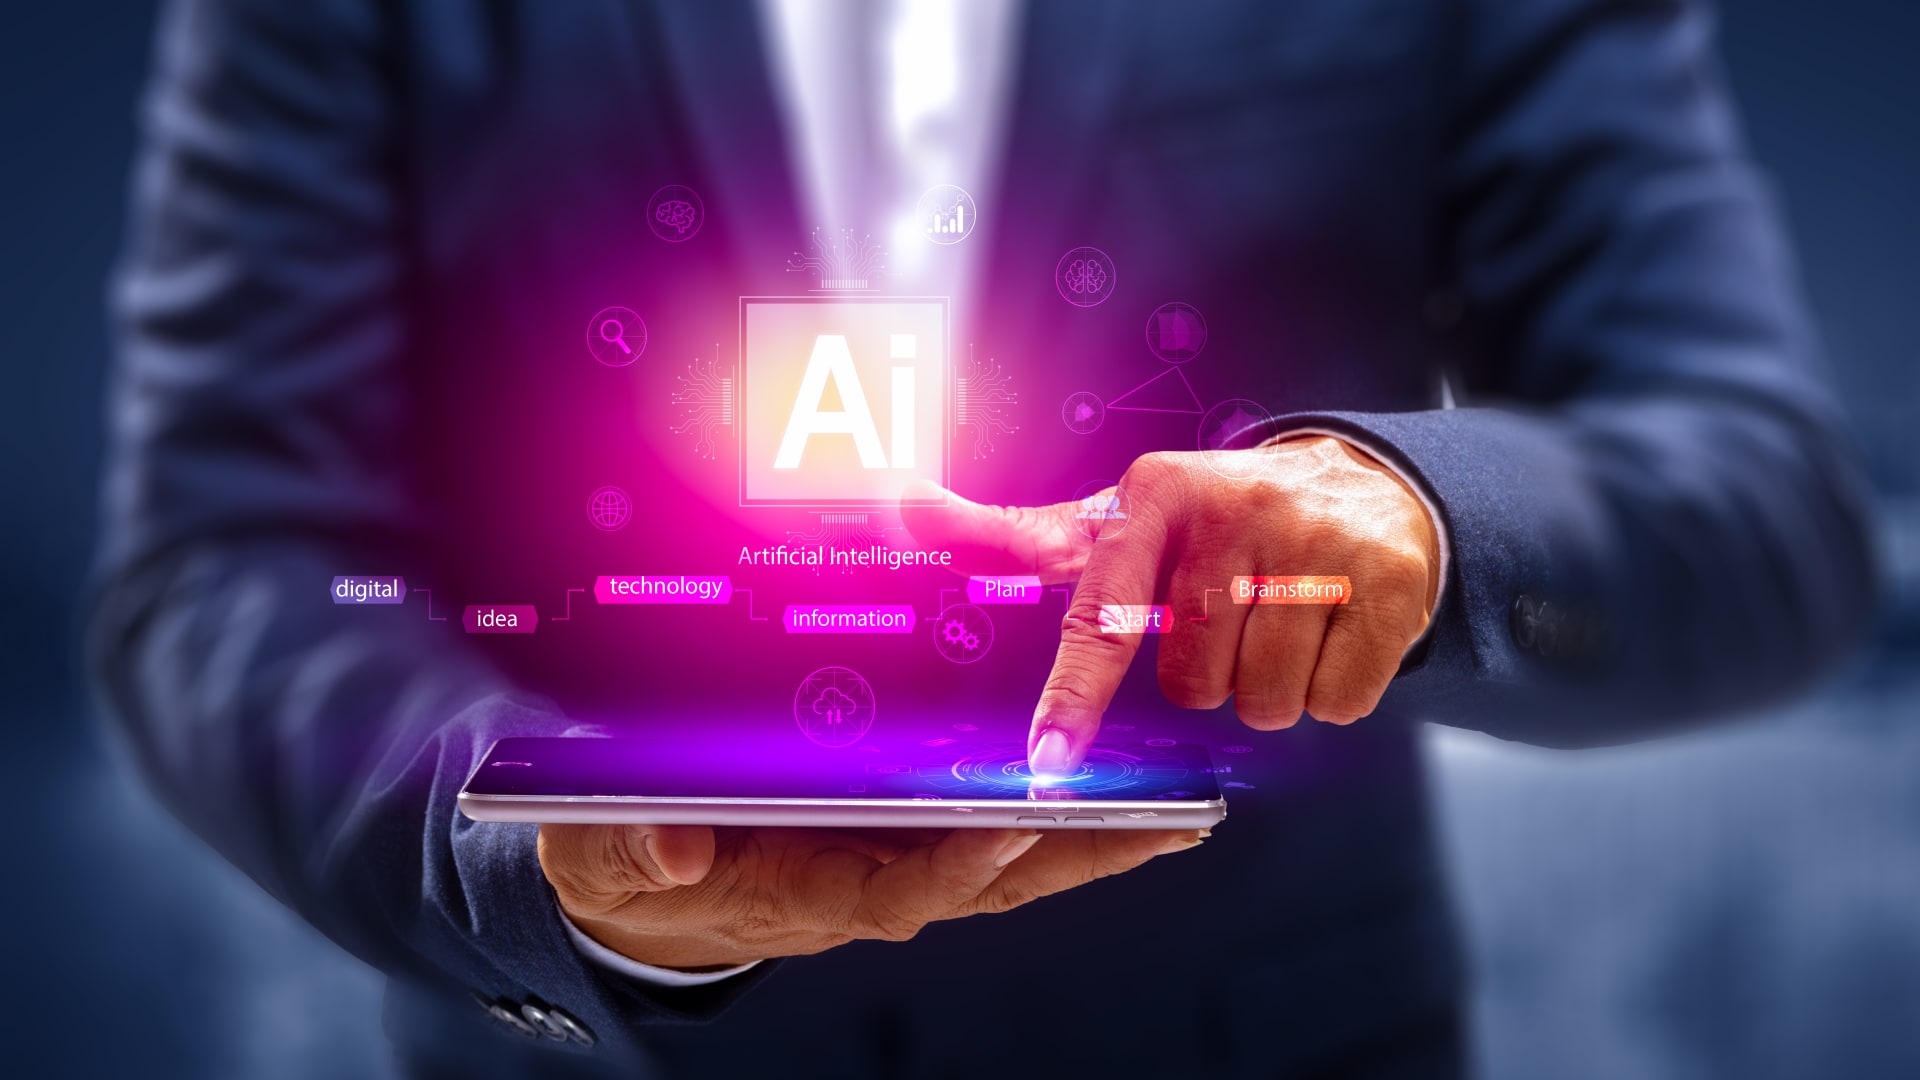 La primera gran ley del mundo para regular la inteligencia artificial aprobada por los legisladores europeos